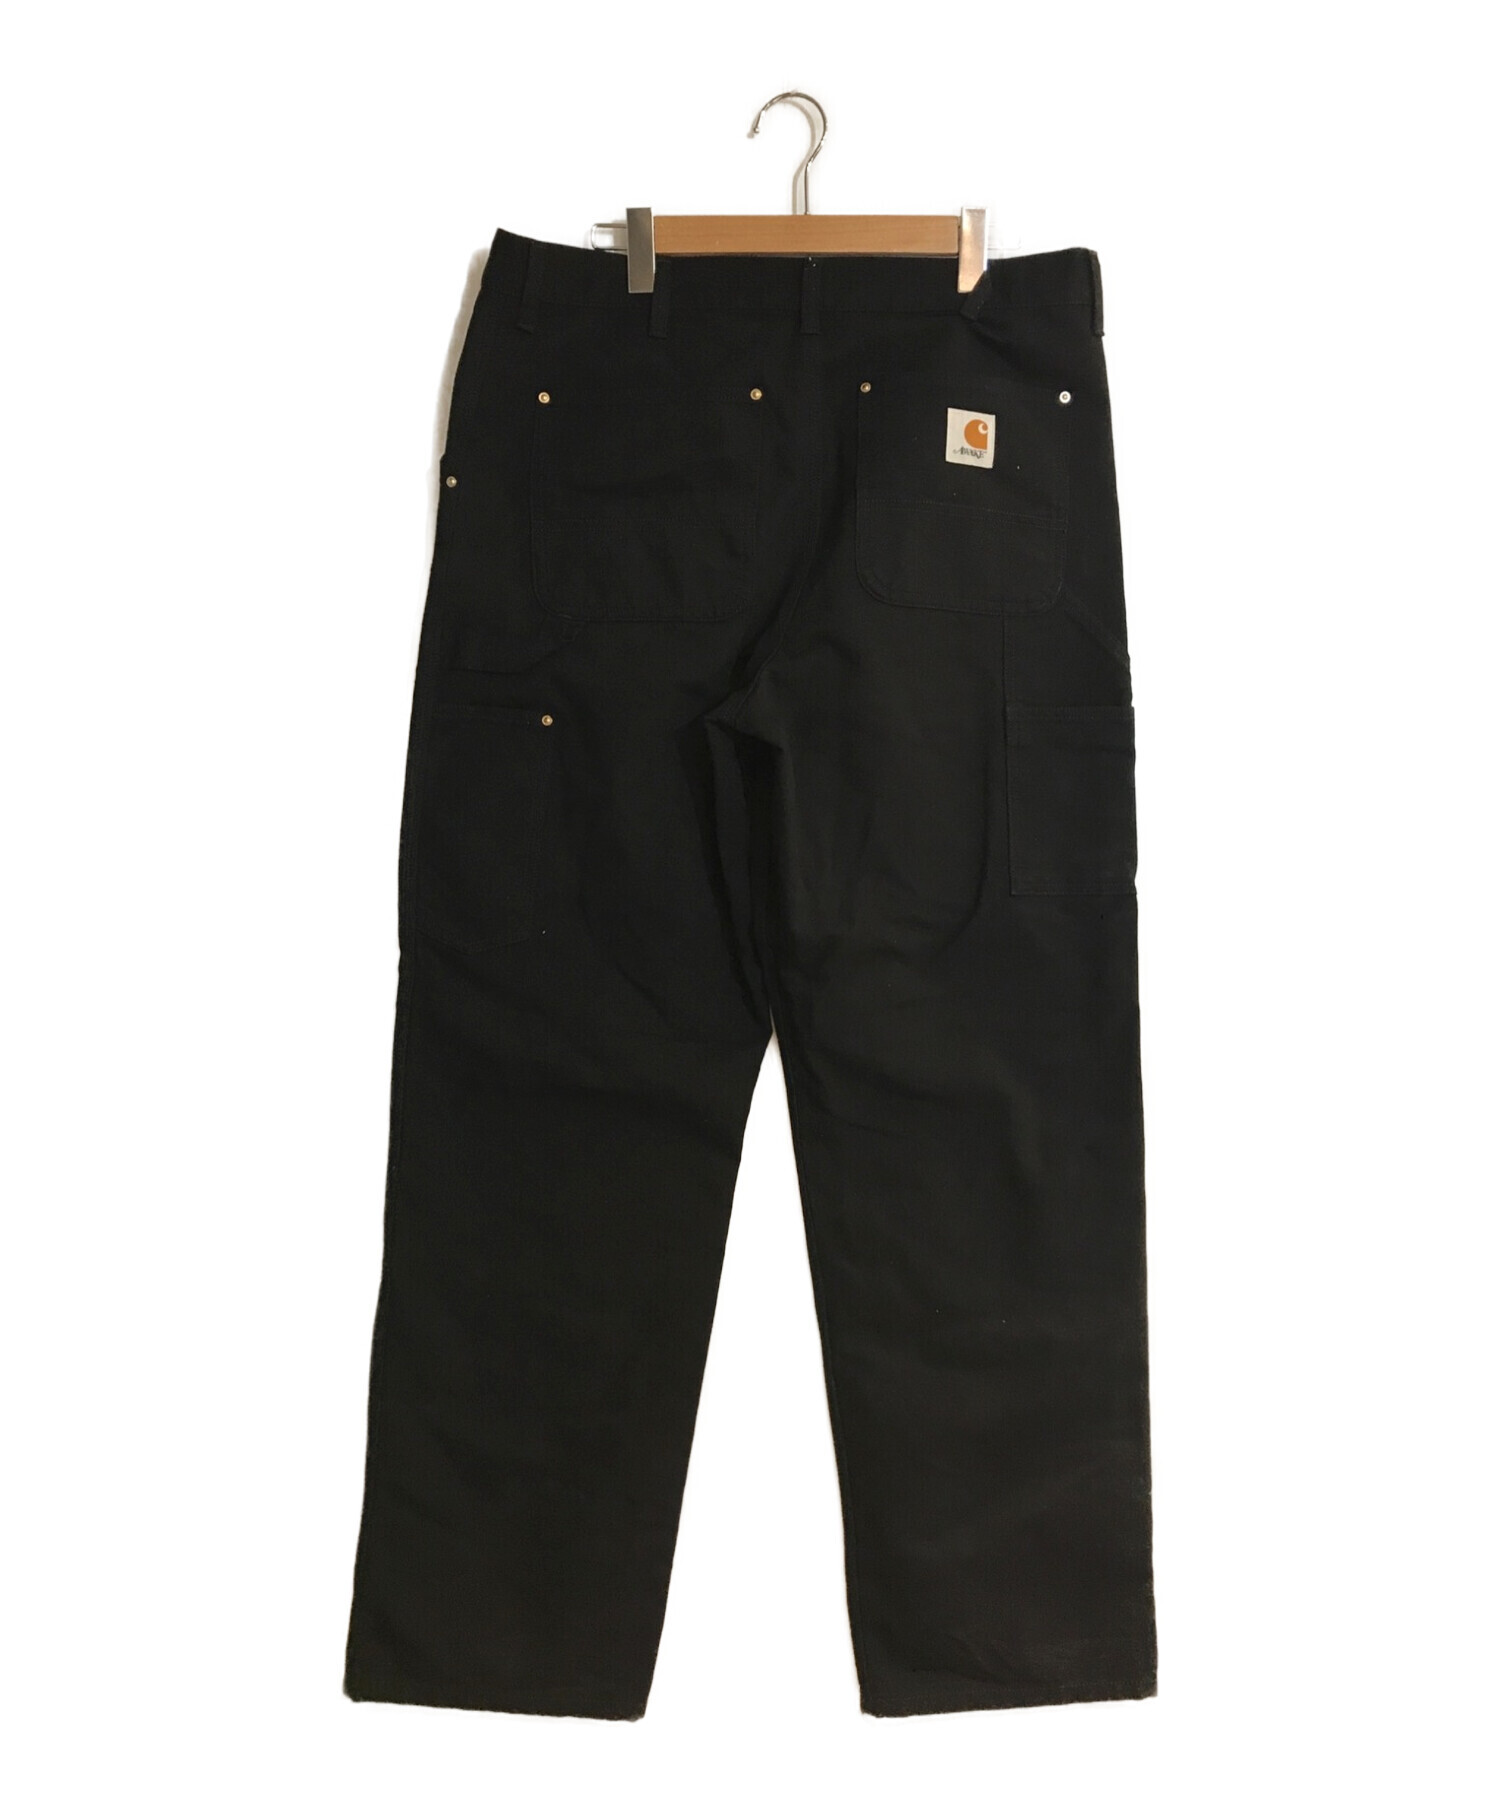 Carhartt WIP (カーハートダブリューアイピー) AWAKE NY (アウェイク ニューヨーク) Double Knee Pant  Black/ダブルニ―パンツ　ブラック ブラック サイズ:L